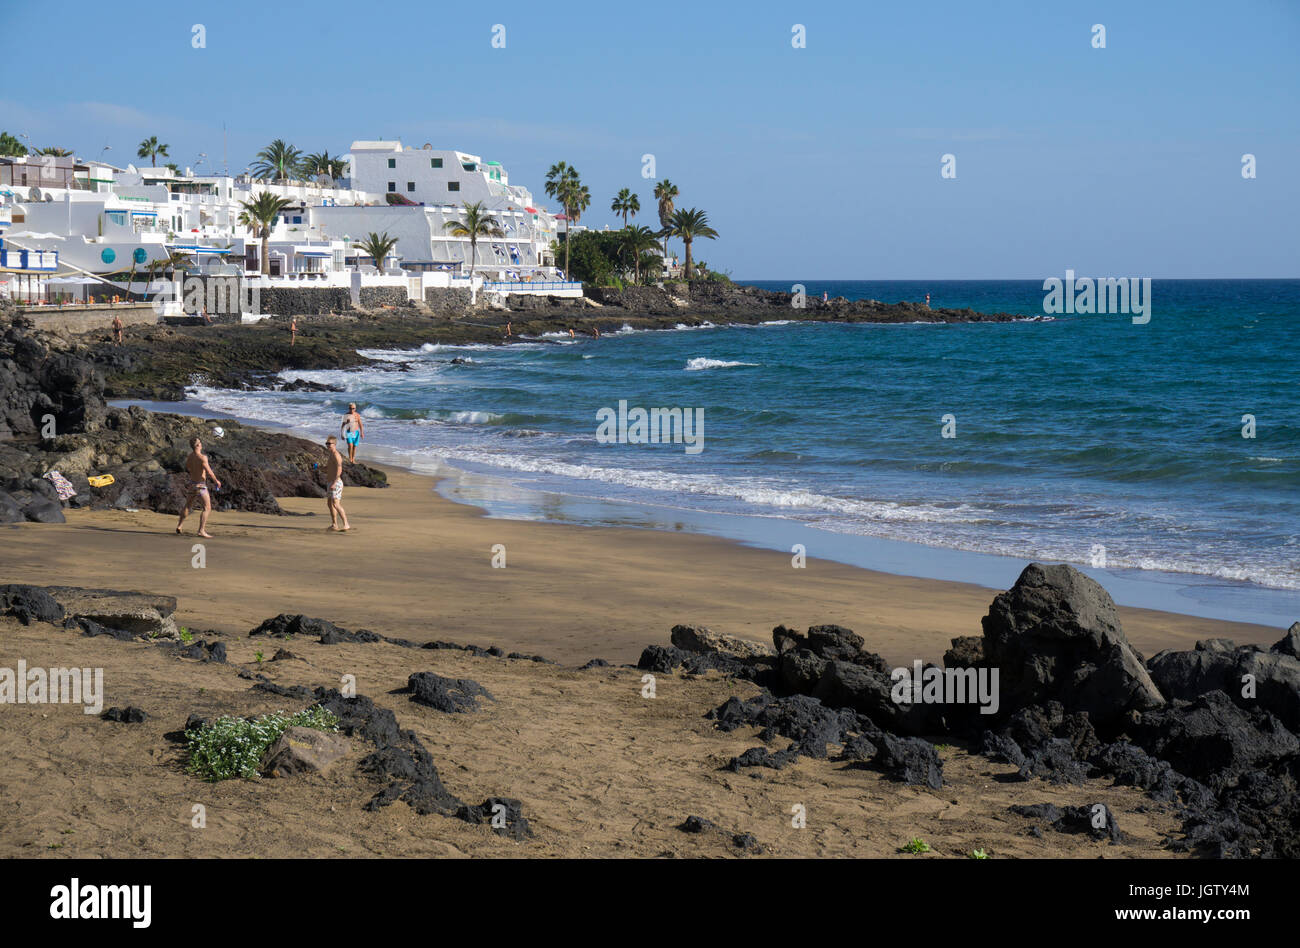 Winziger Stadtstrand eingefasst von Lavasteinen, Puerto del Carmen, Lanzarote, Kanarische Inseln, Europa | Tiny town beach at Puerto del Carmen, Lanza Stock Photo